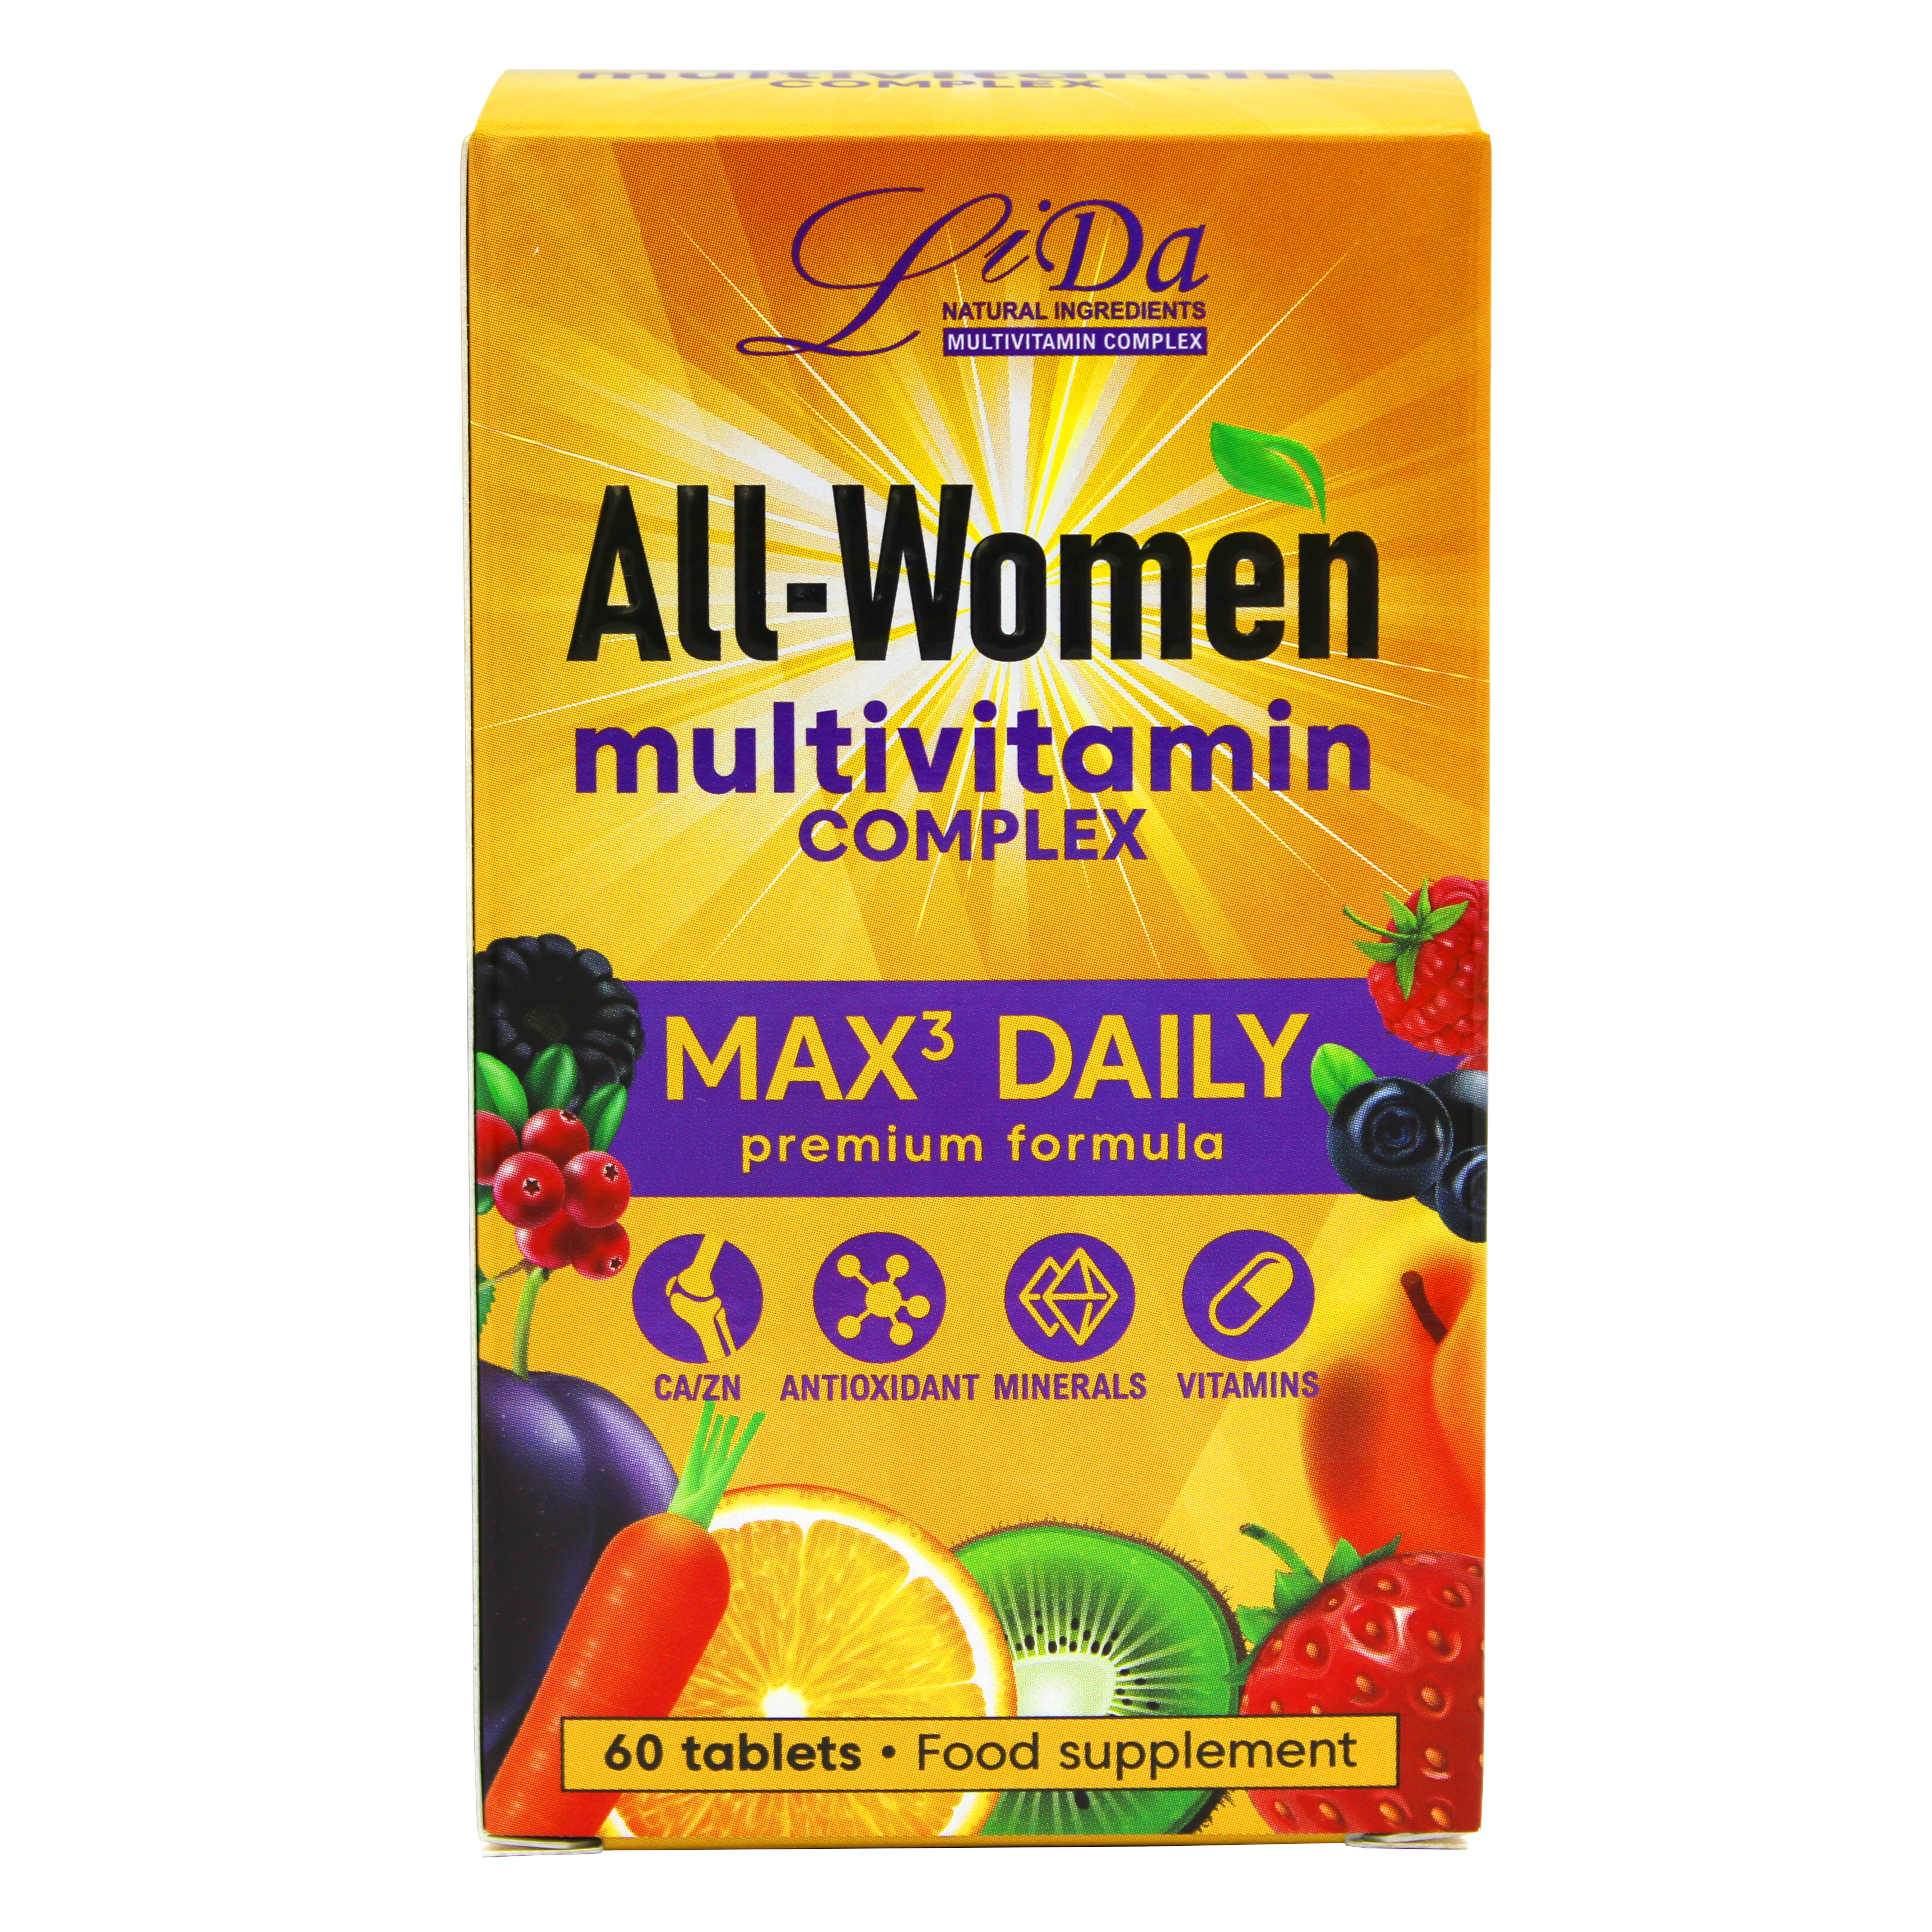 Женщинам после 60 витамины отзывы. Витамины от старения кожи для женщин. Комплекс витаминов для женщин woman Complex отзывы. Витамины для женщин woman Complex отзывы. Мультивитамин комплекс турецкий для женщин отзывы покупателей.